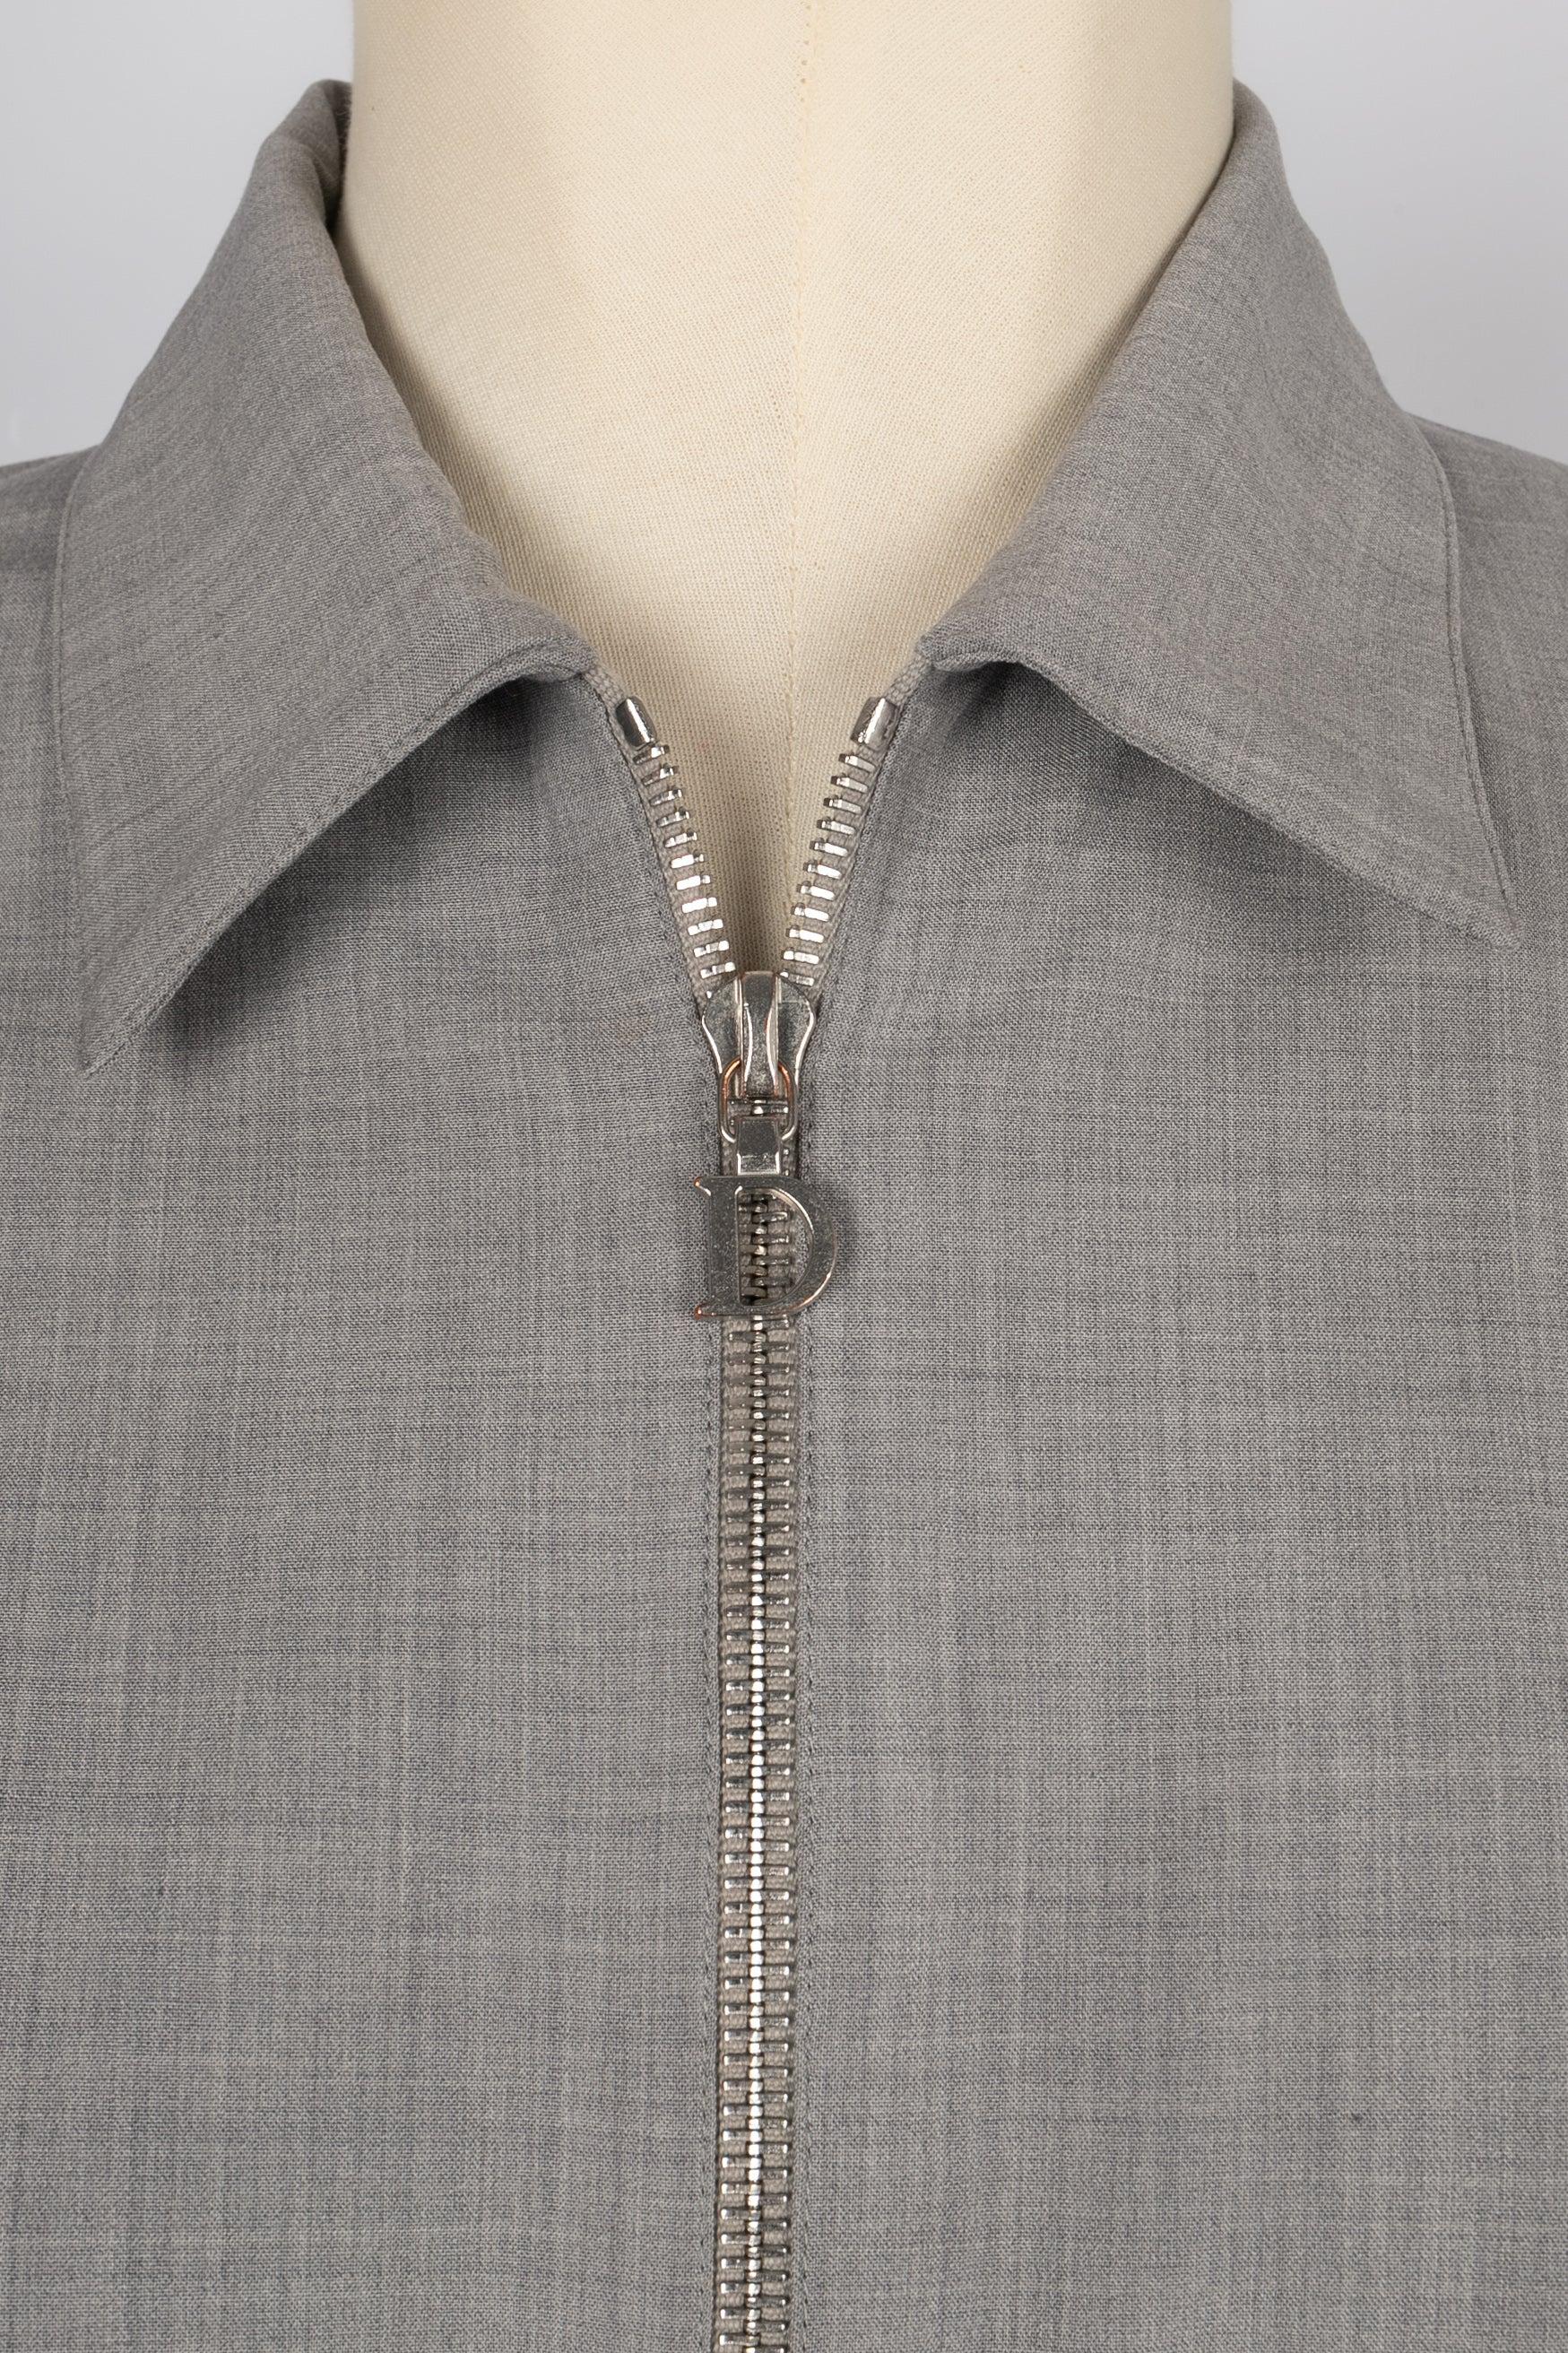 Dior Grey Blended Wool Short Jacket, 2001 For Sale 3